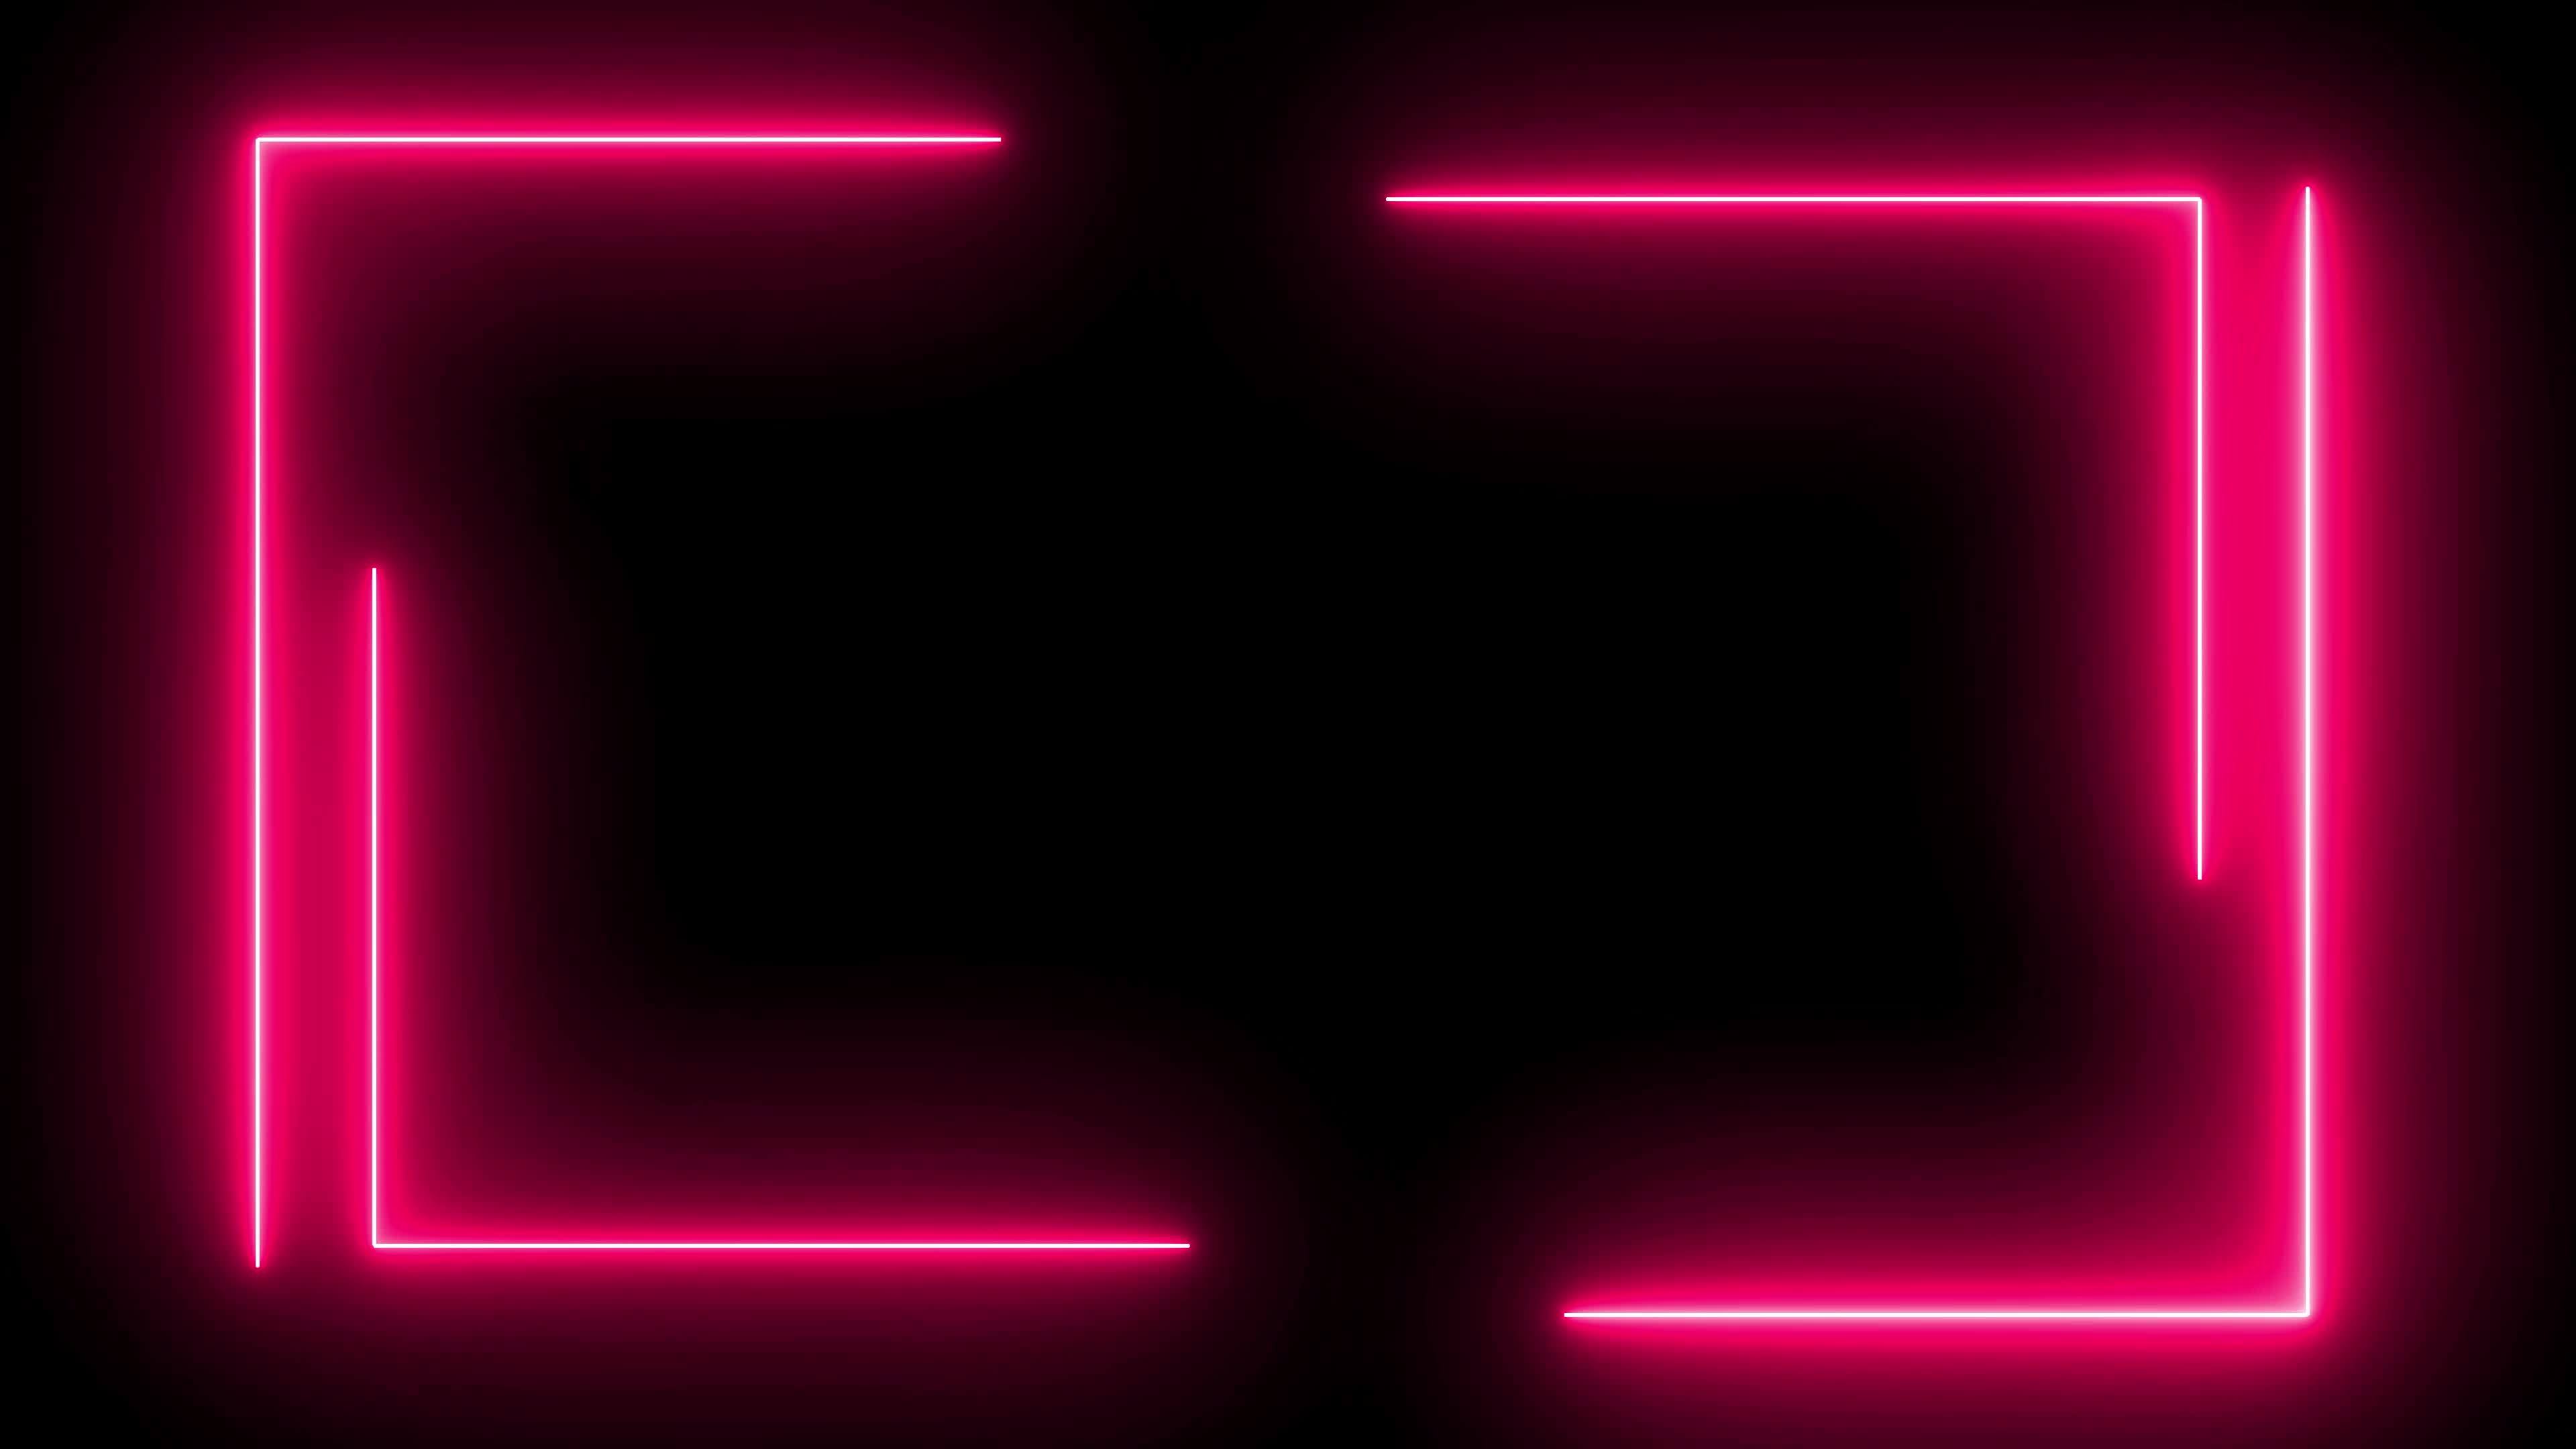 Tia sáng đèn neon hồng xoáy trong khung trên nền đen là một kiệt tác ánh sáng cho mọi không gian. Với nguồn sáng chuyên nghiệp, các kỹ sư điện tử đã tạo nên một tác phẩm đẹp mắt với tia sáng độc đáo.